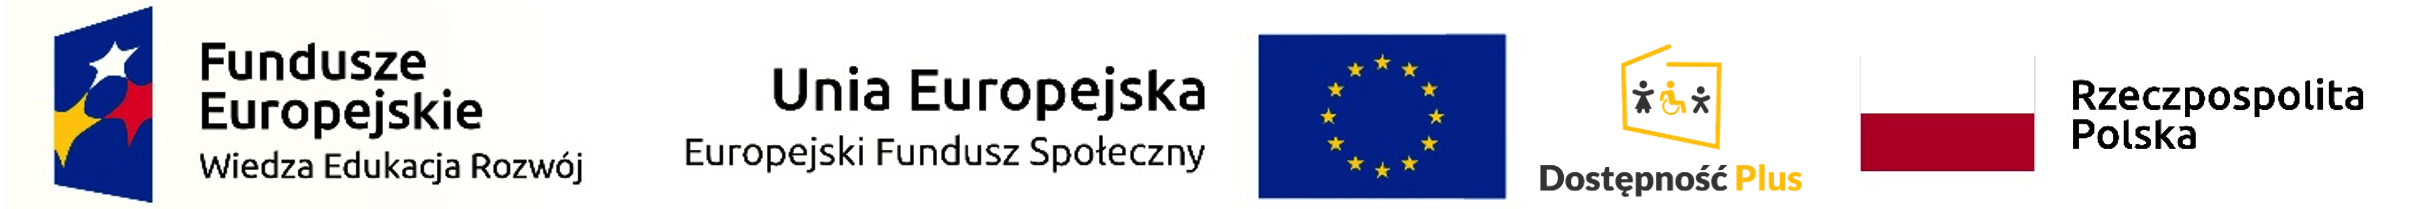 Loga: Fundusze Europejskie, Unia Europejska, Dostępność Plus, Rzeczpospolita Polska